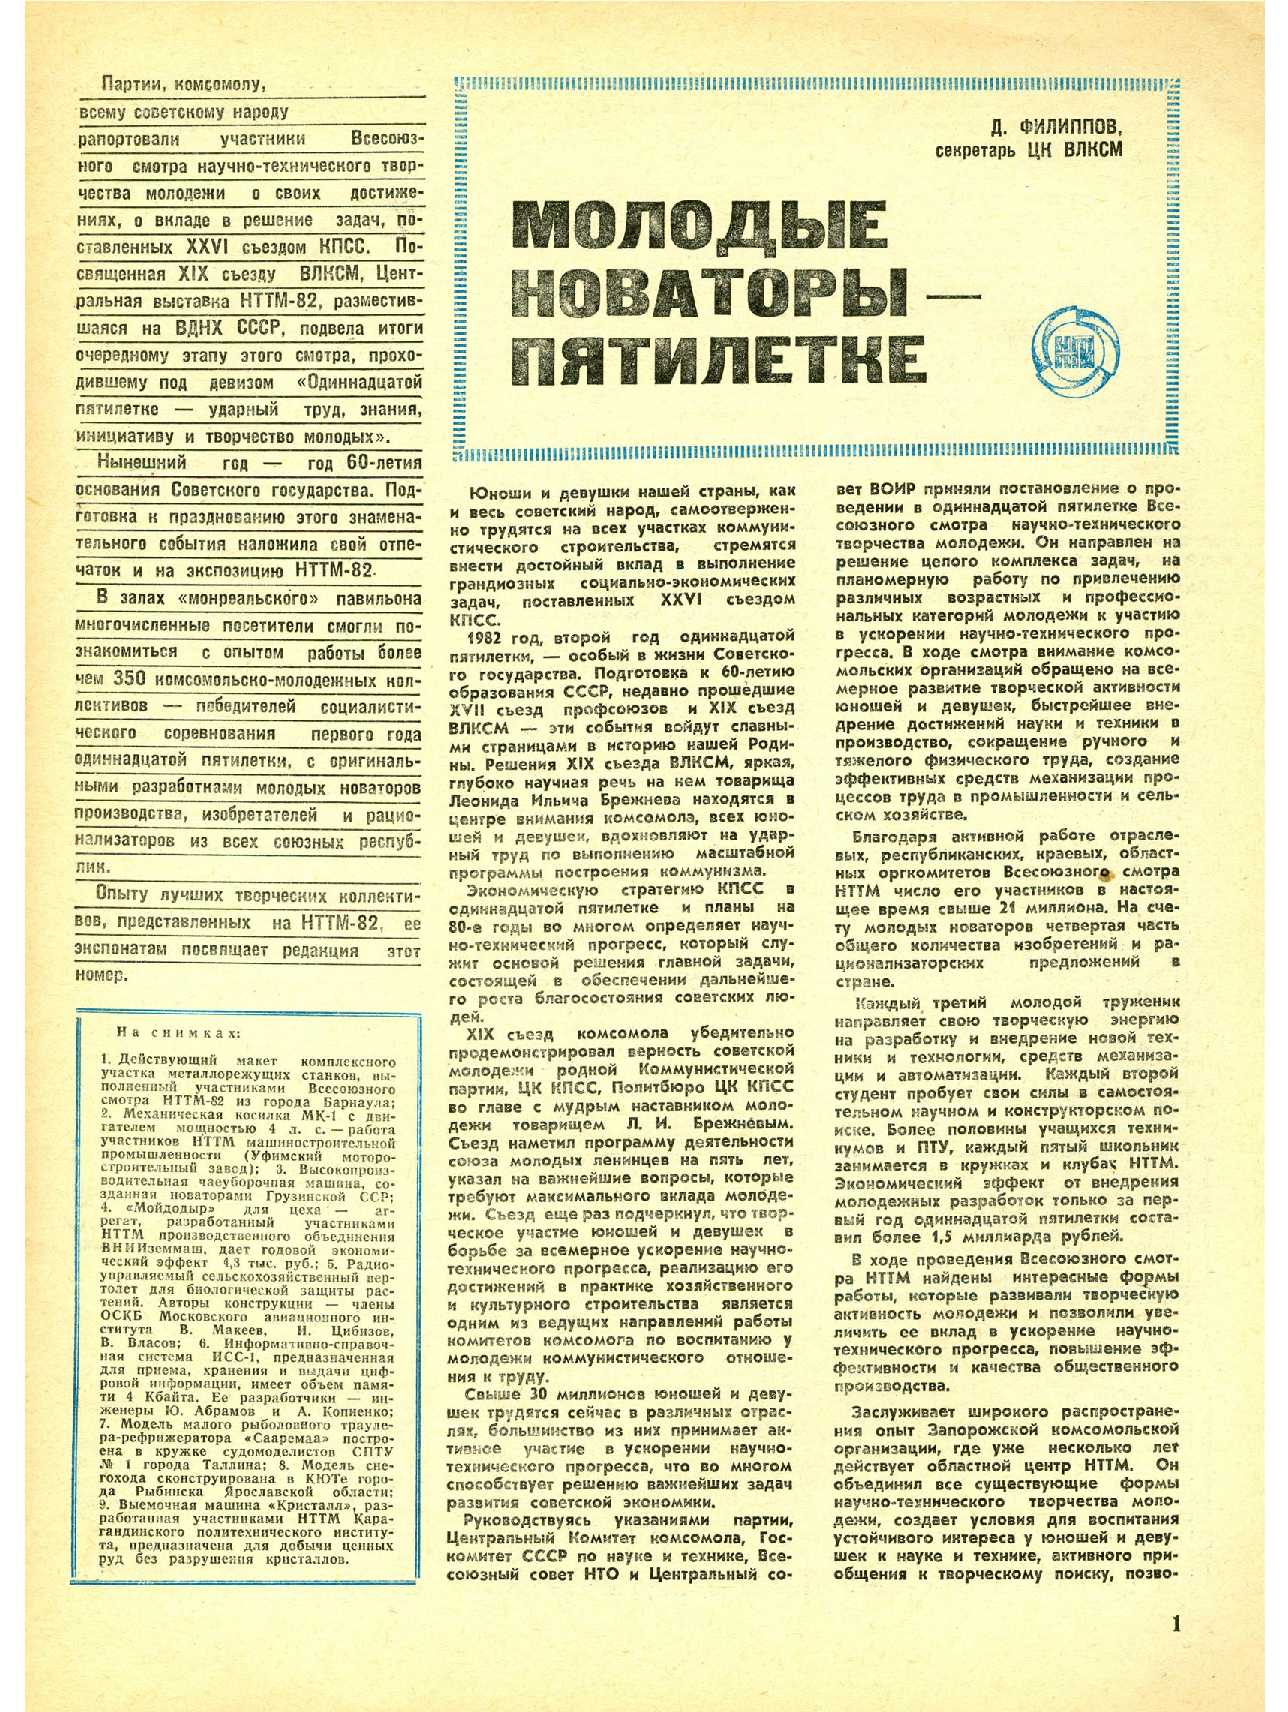 МК 10, 1982, 1 c.